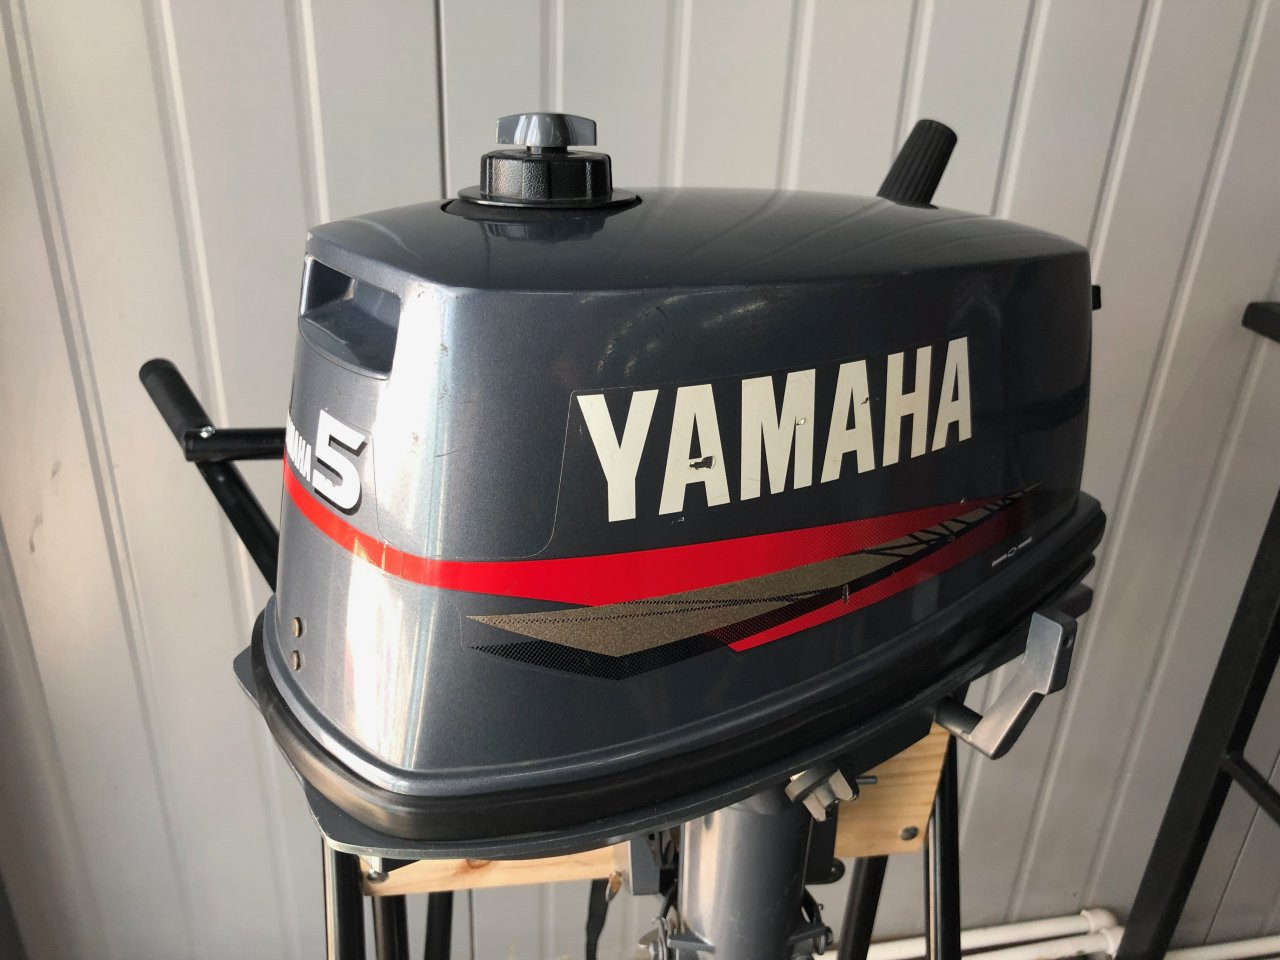 Ямаха 5 л с. Yamaha 5. Yamaha outboard лого. Yamaha logo на лодку. Yamaha 25 яхта.